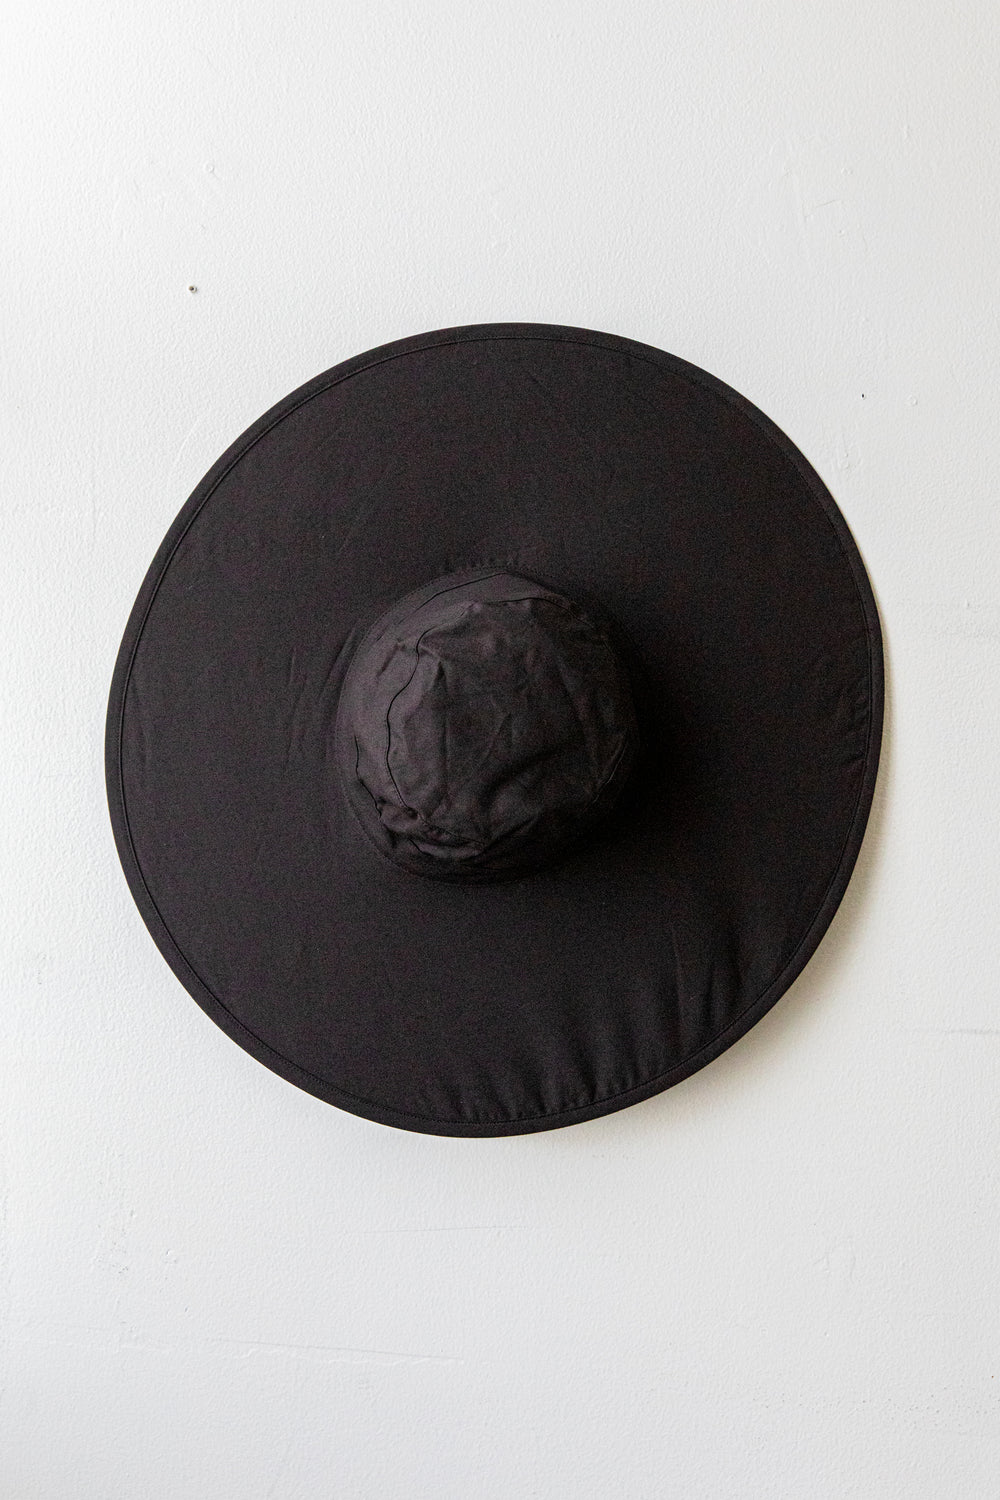 Black Packable Sun Hat